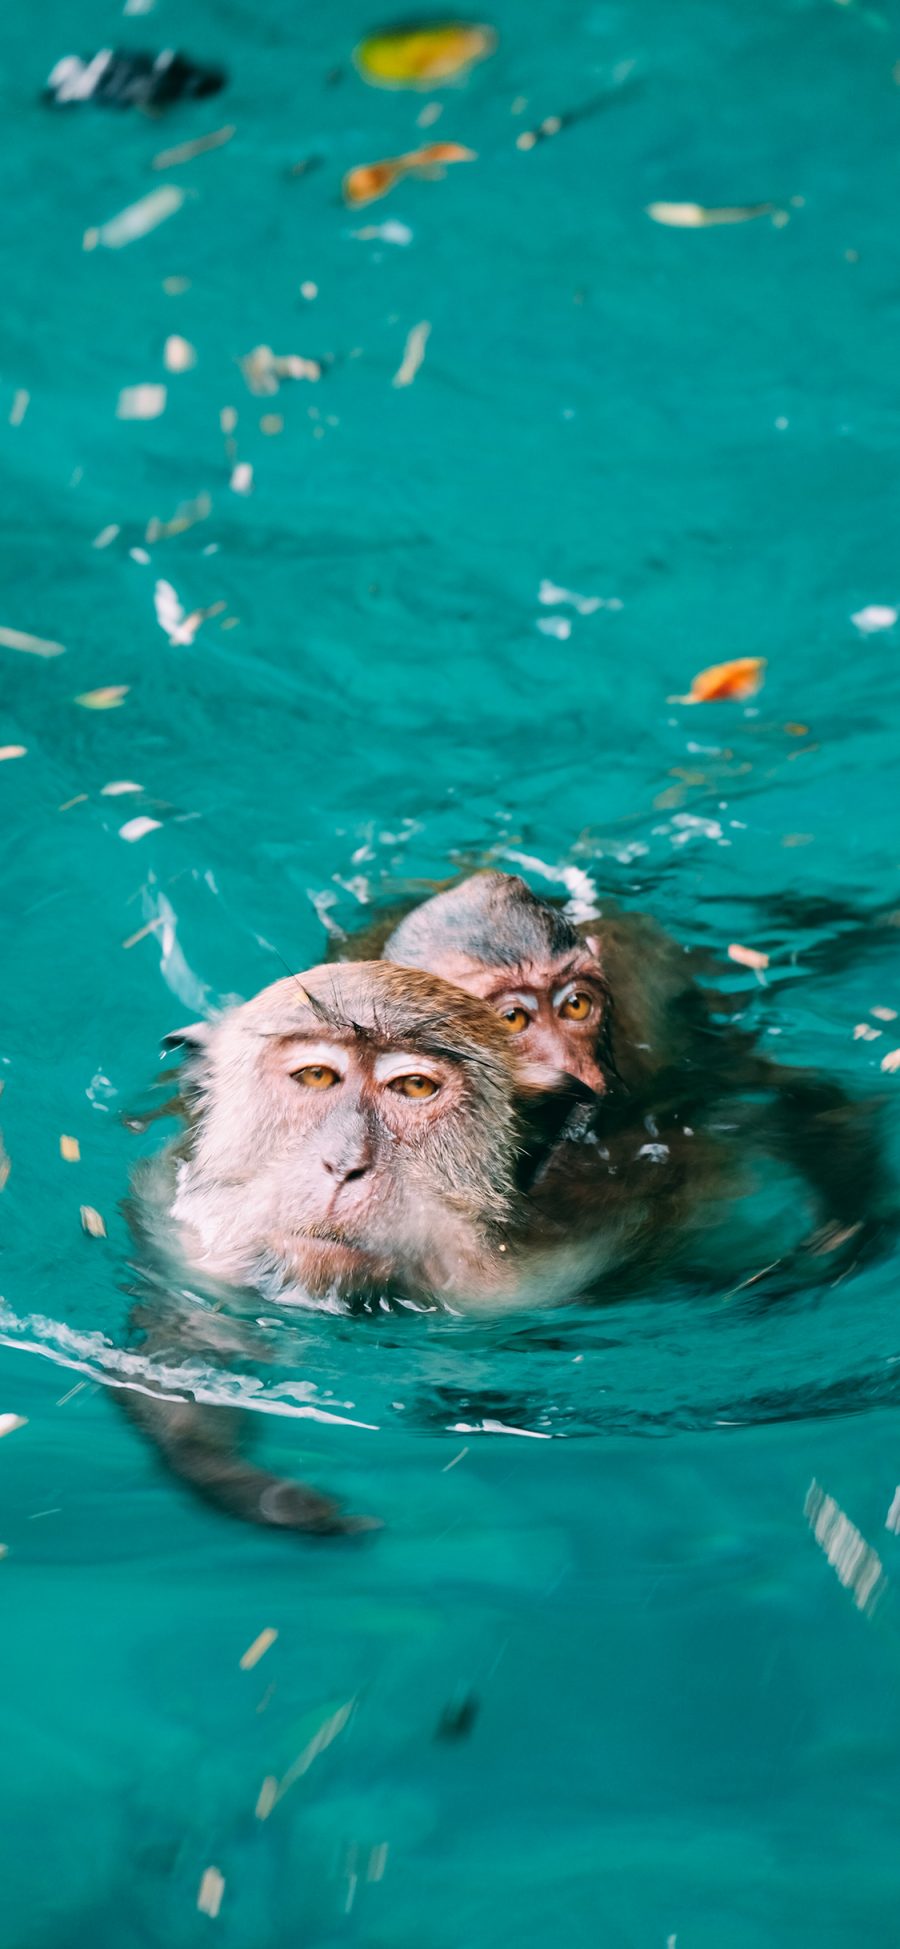 [2436×1125]猴子 猿类 水池 游泳 苹果手机壁纸图片